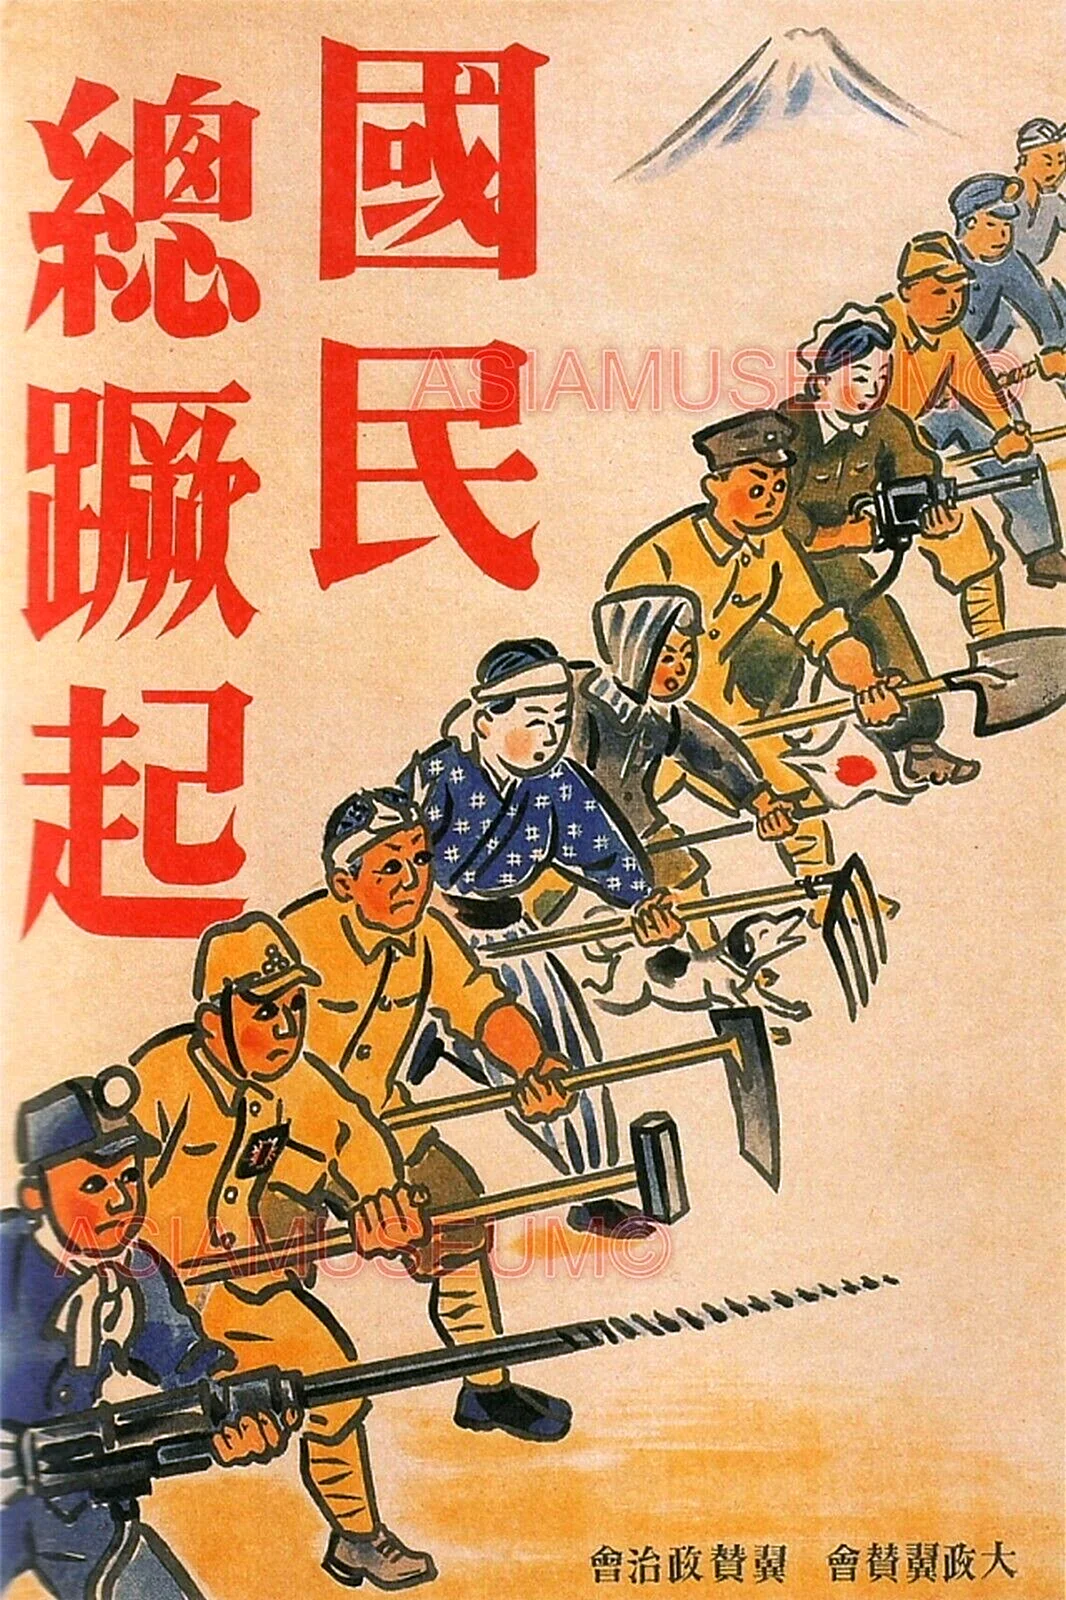 Агитационные плакаты Японии второй мировой